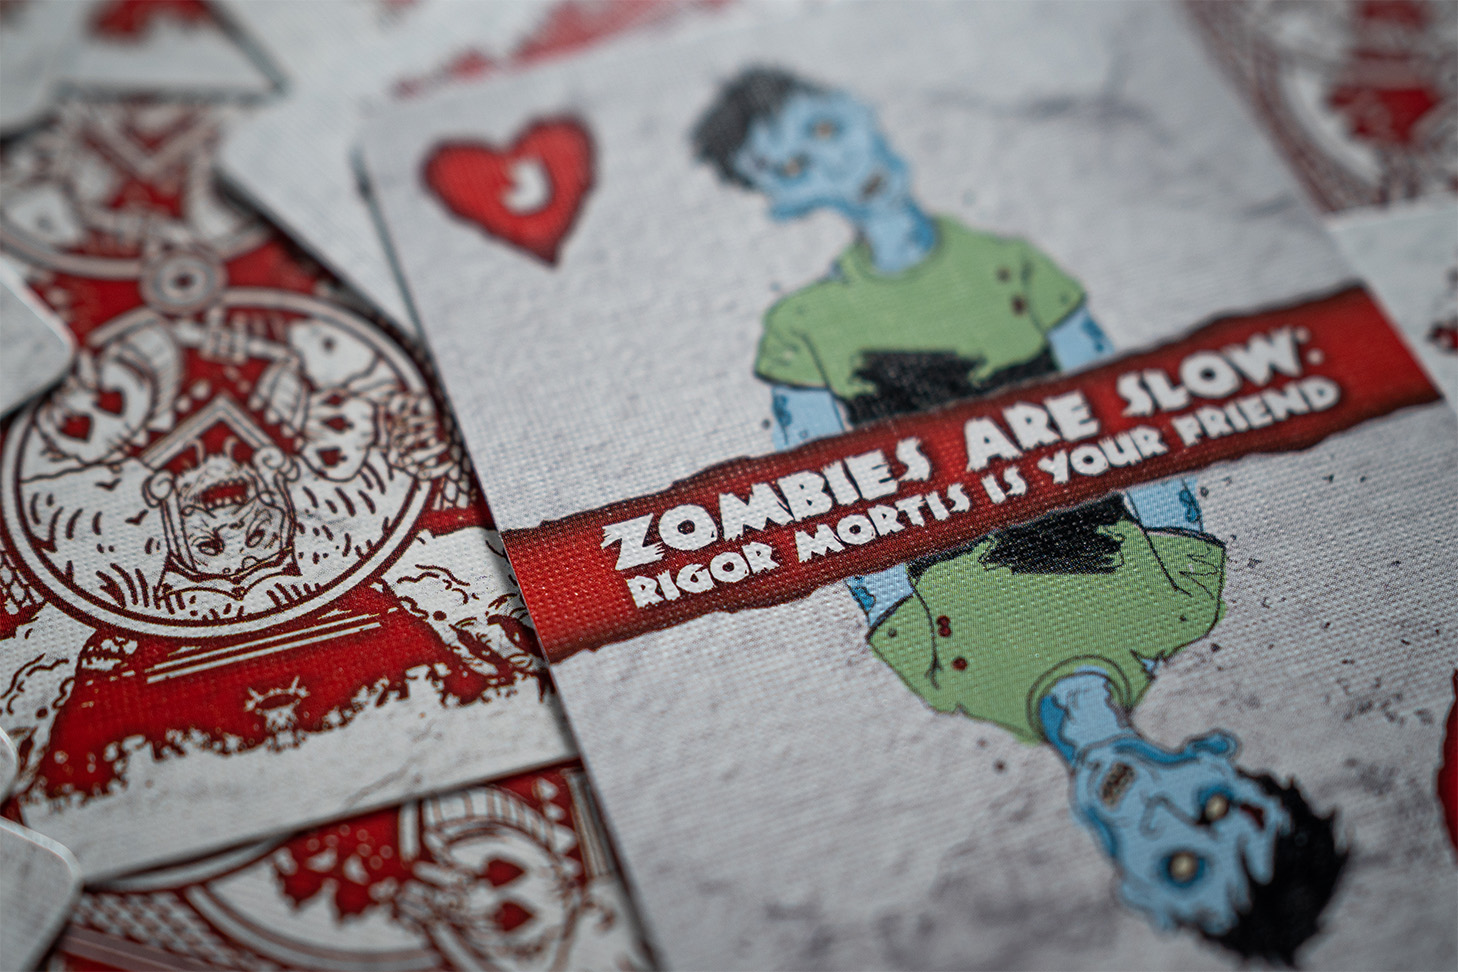 Die Bicycle® Zombie Spielkarten sind eine perfekte Wahl für Fans von Horror und Zauberei. Das Premium-Design der Karten zeigt gruselige Zombies.Erlebe unvergessliche Spielabende mit diesen hochwertigen und edlen Karten.